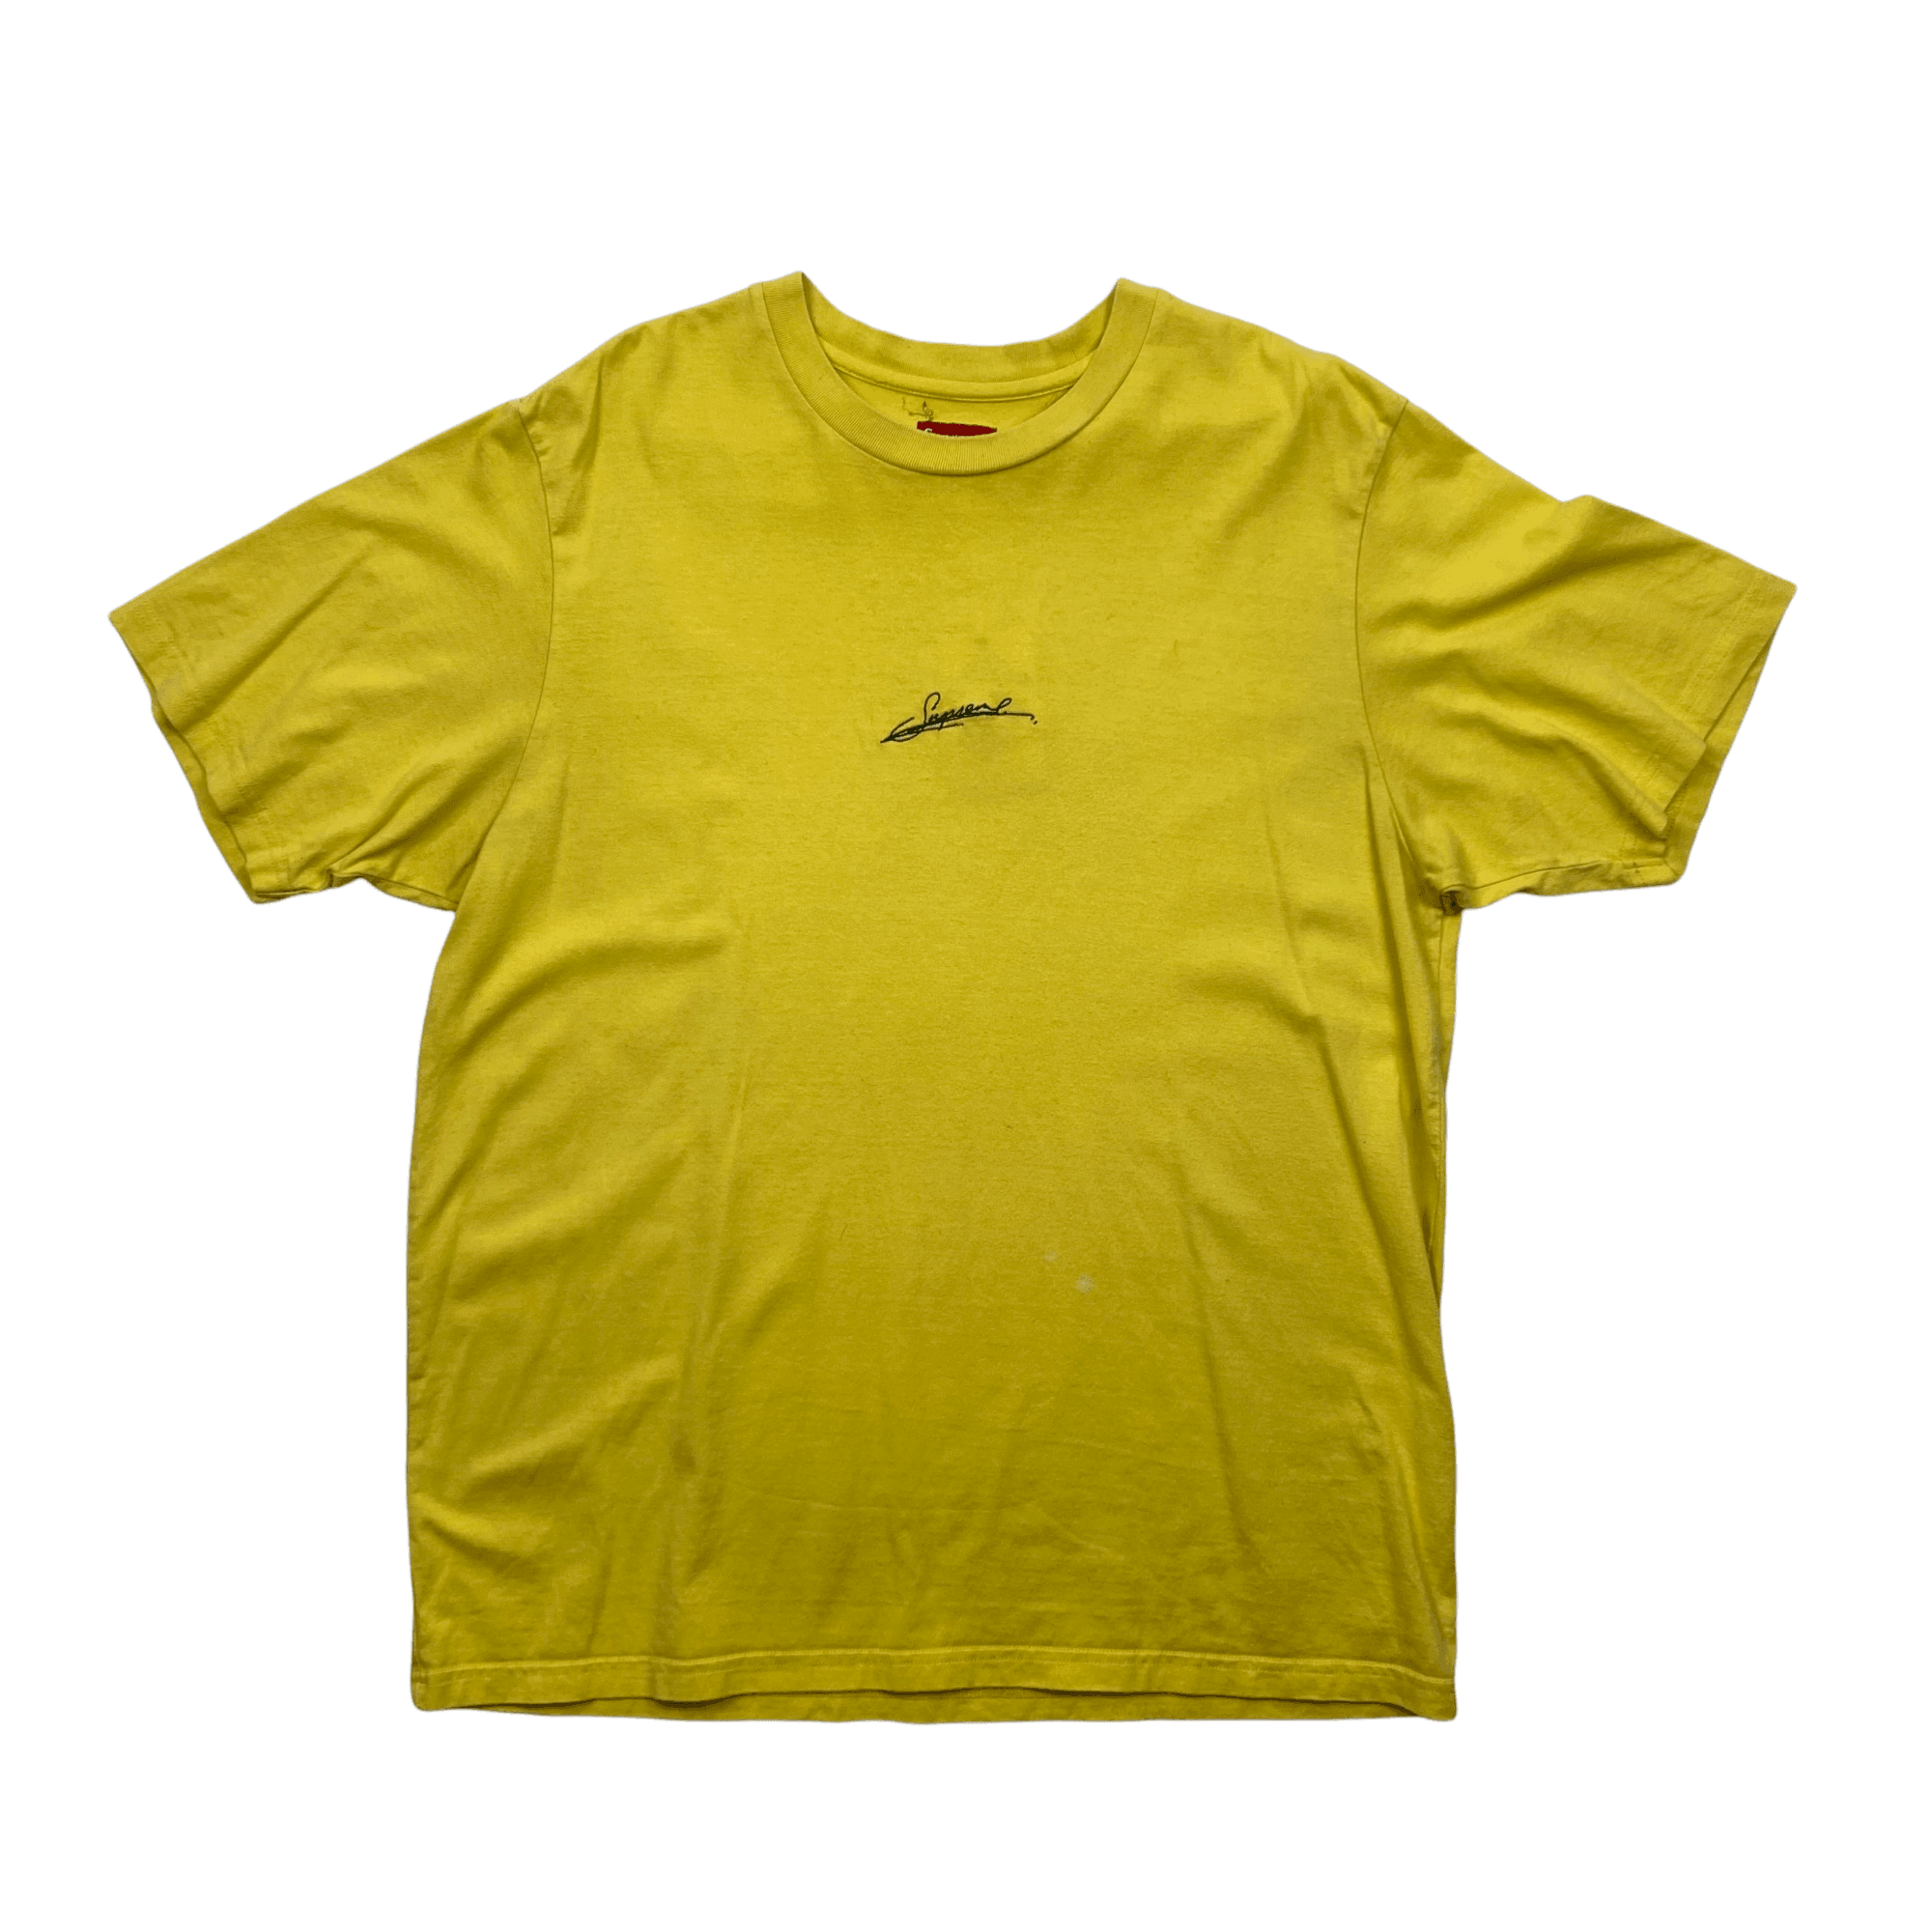 Yellow Supreme Script Logo Tee - Large - The Streetwear Studio